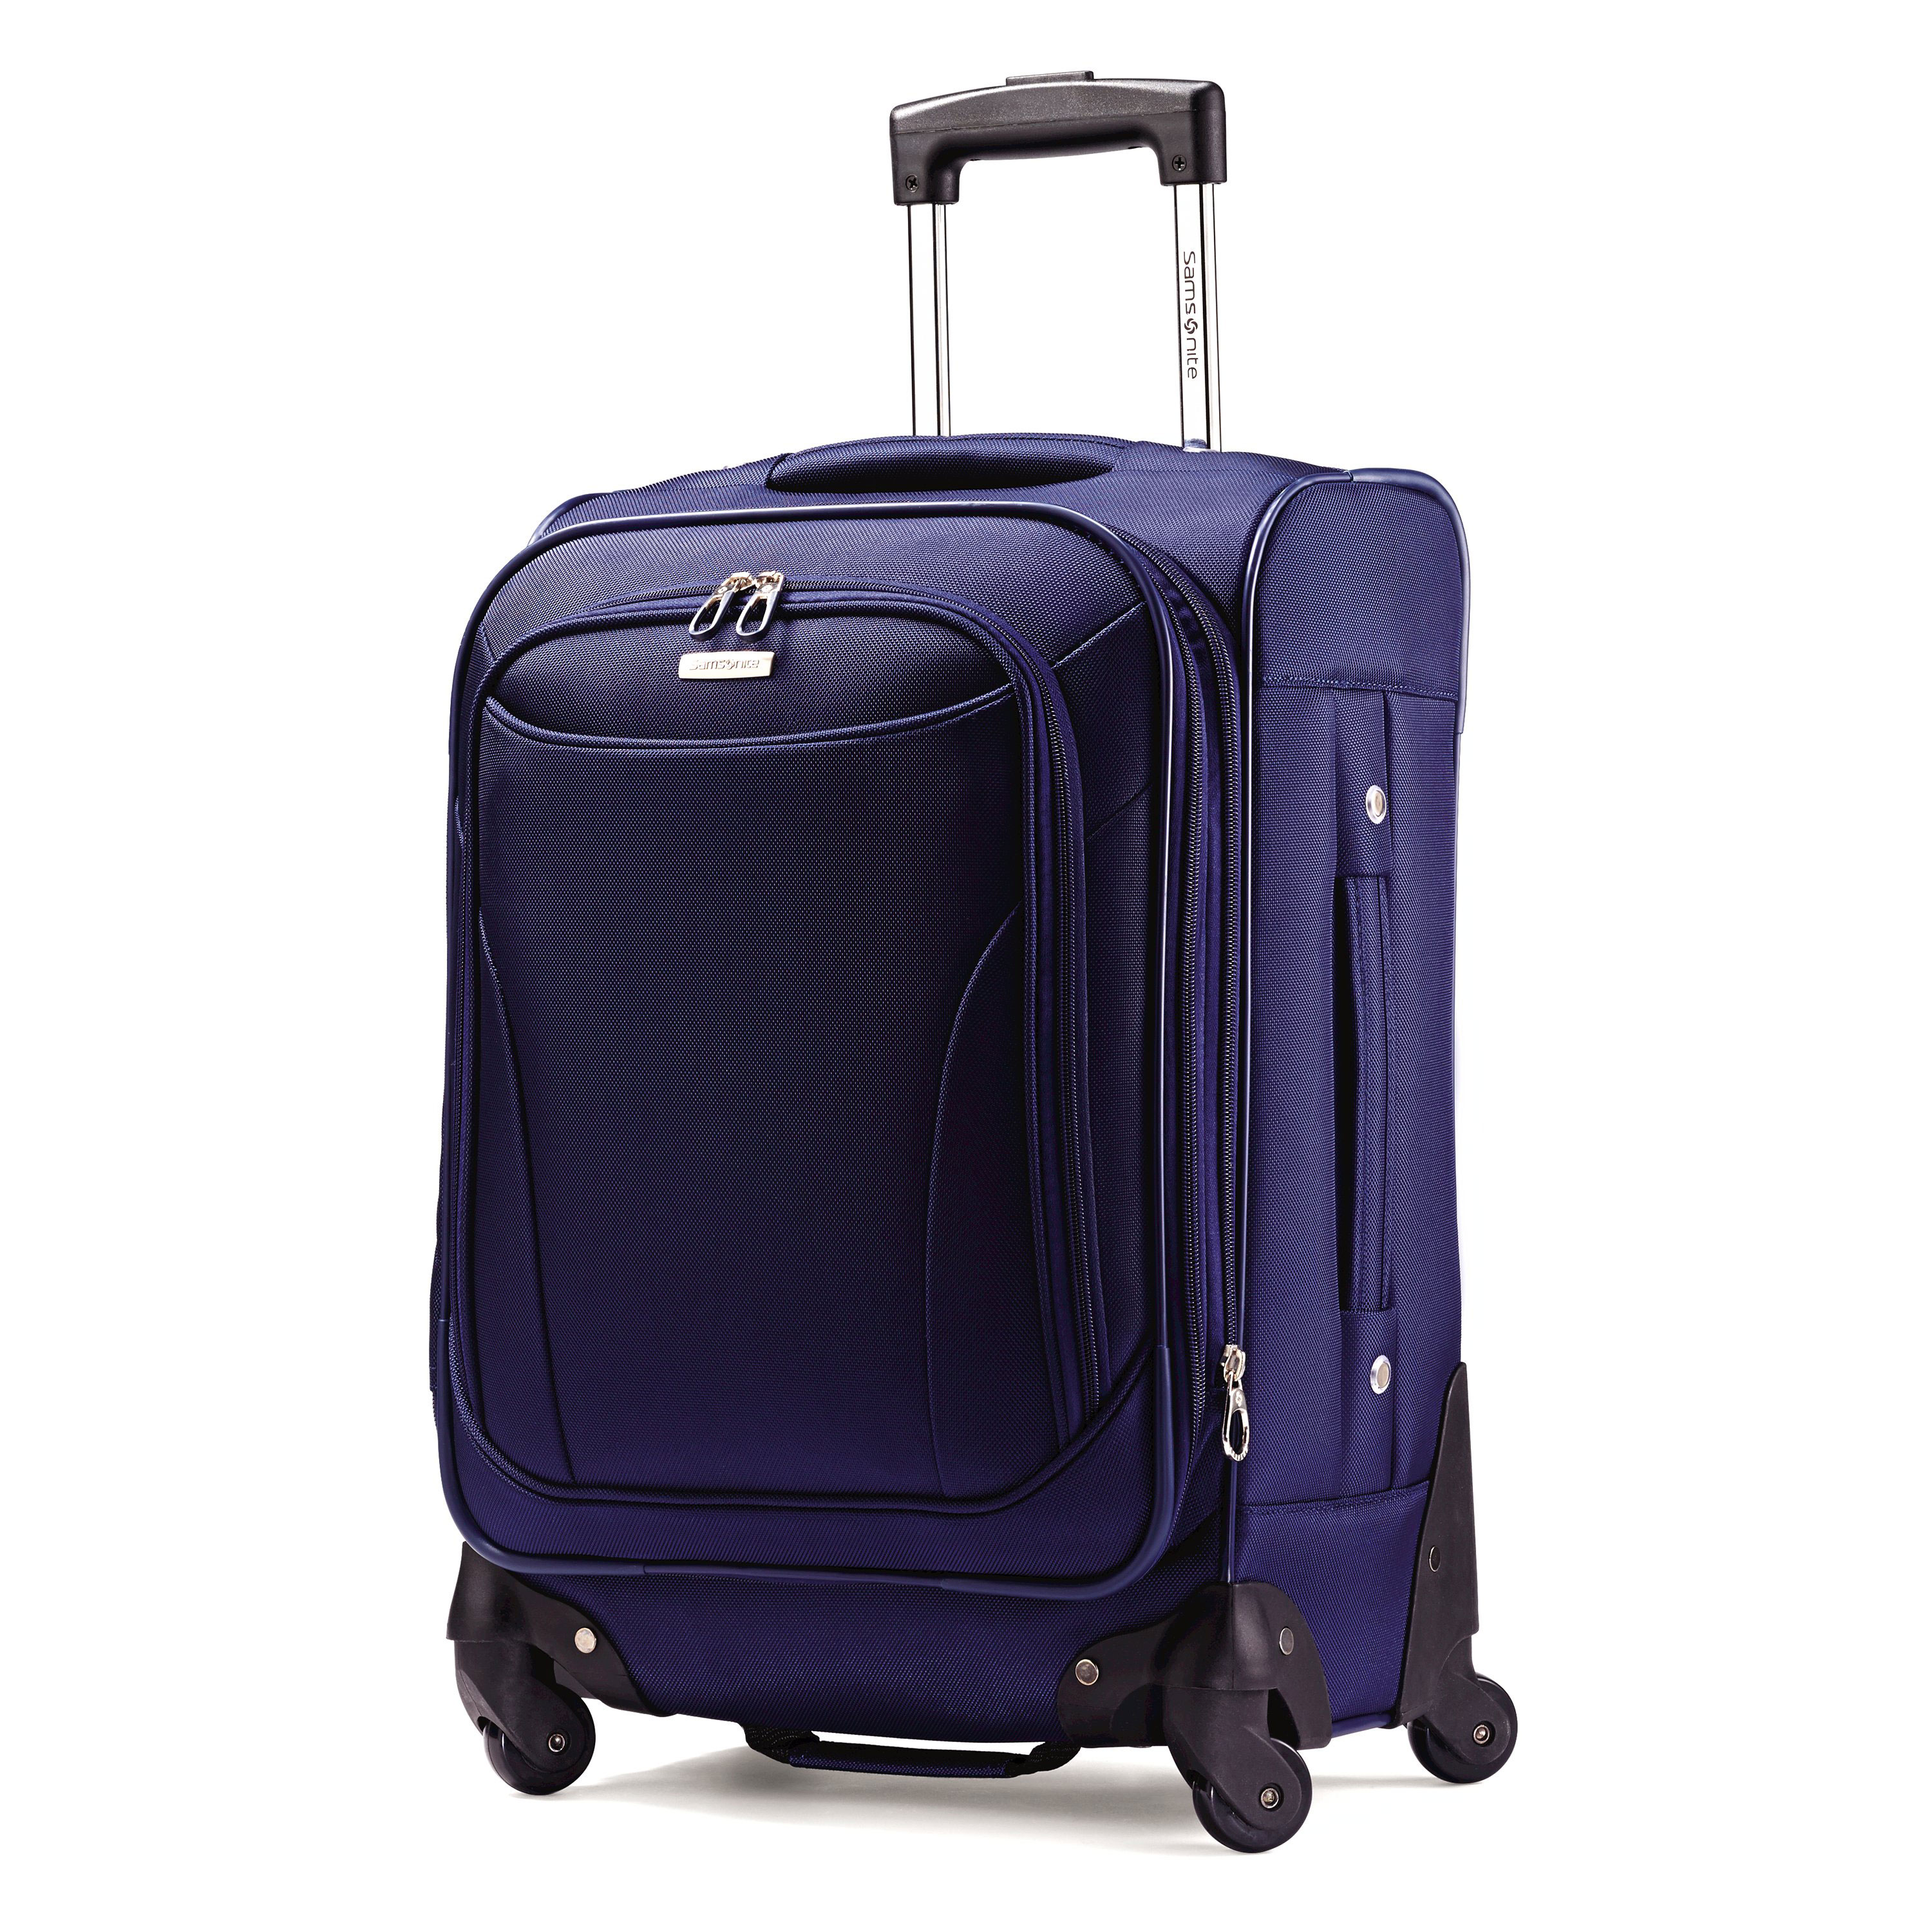 Samsonite Bartlett Softside Carry-On Spinner - Luggage | eBay